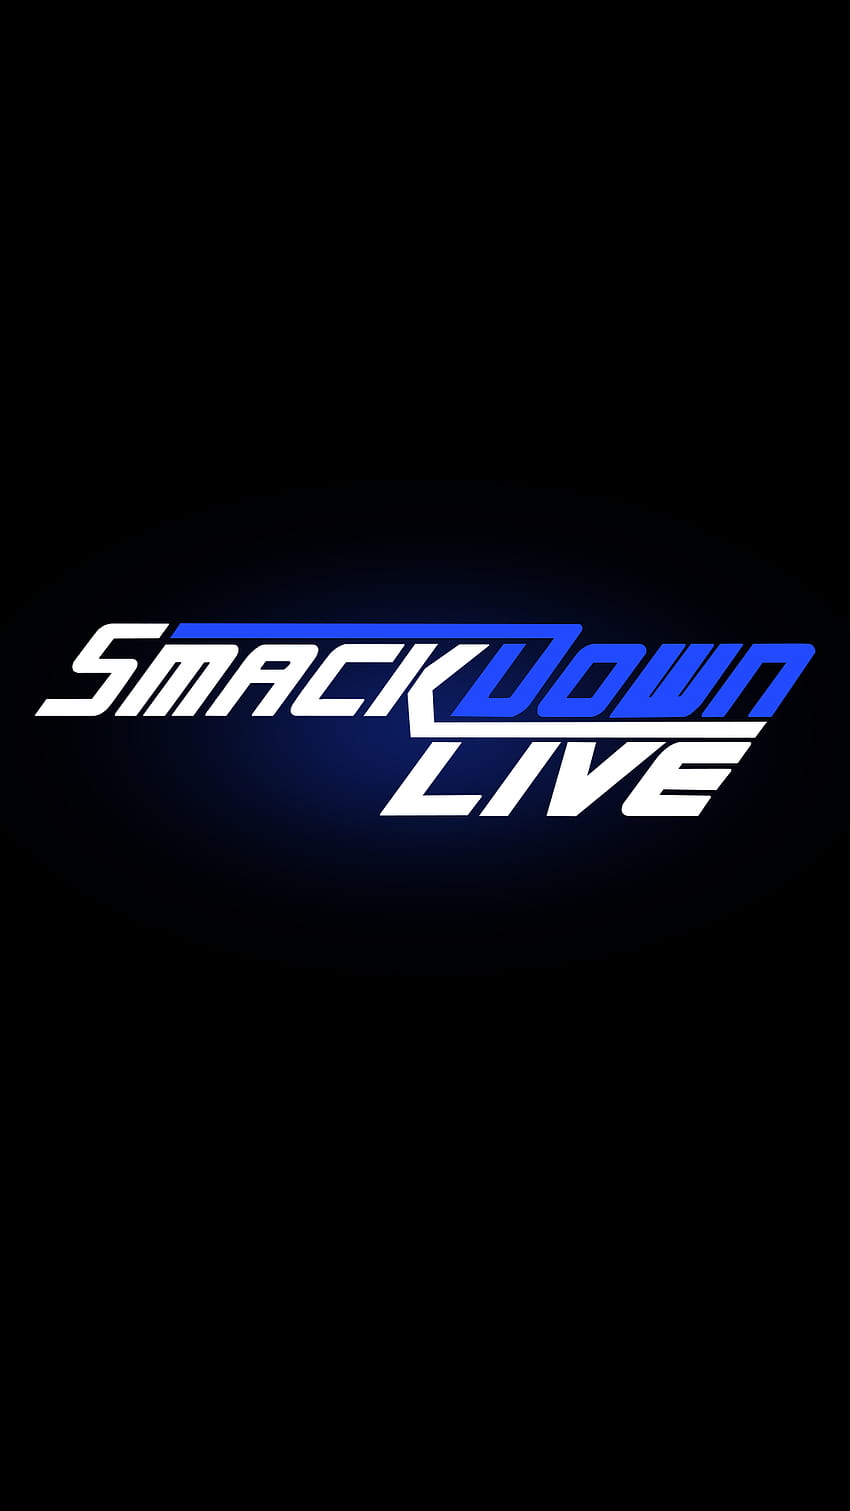 Wwe Smackdown przesłane przez Ethana Cunninghama, logo wwe smackdown Tapeta na telefon HD